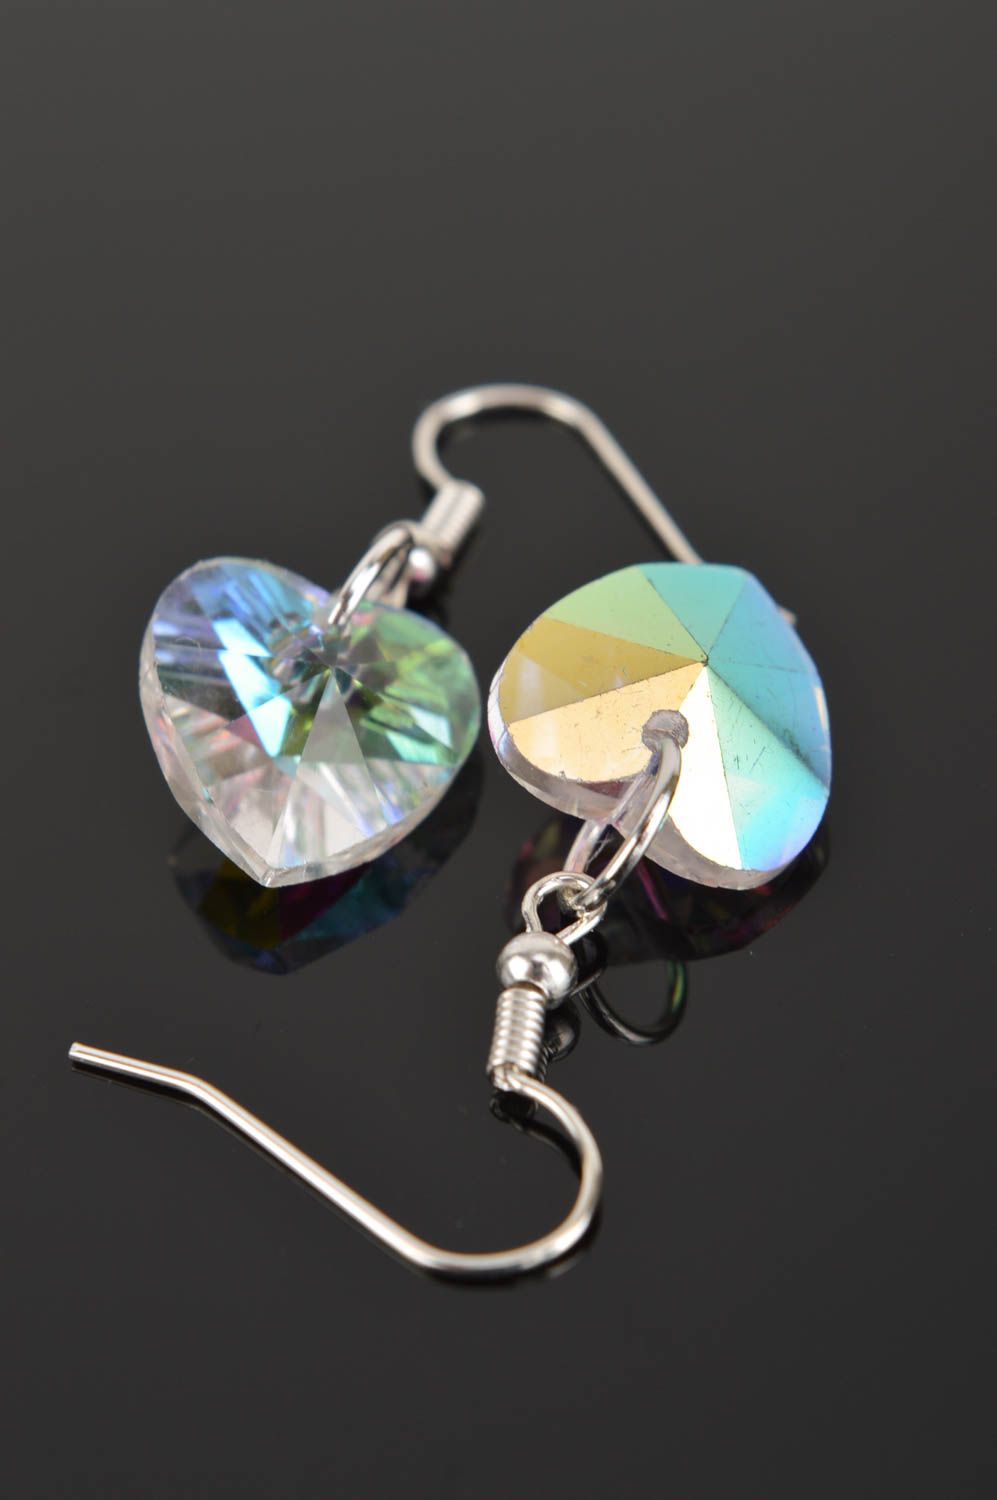 Handmade earrings designer jewelry glass earrings unusual accessory gift ideas photo 3